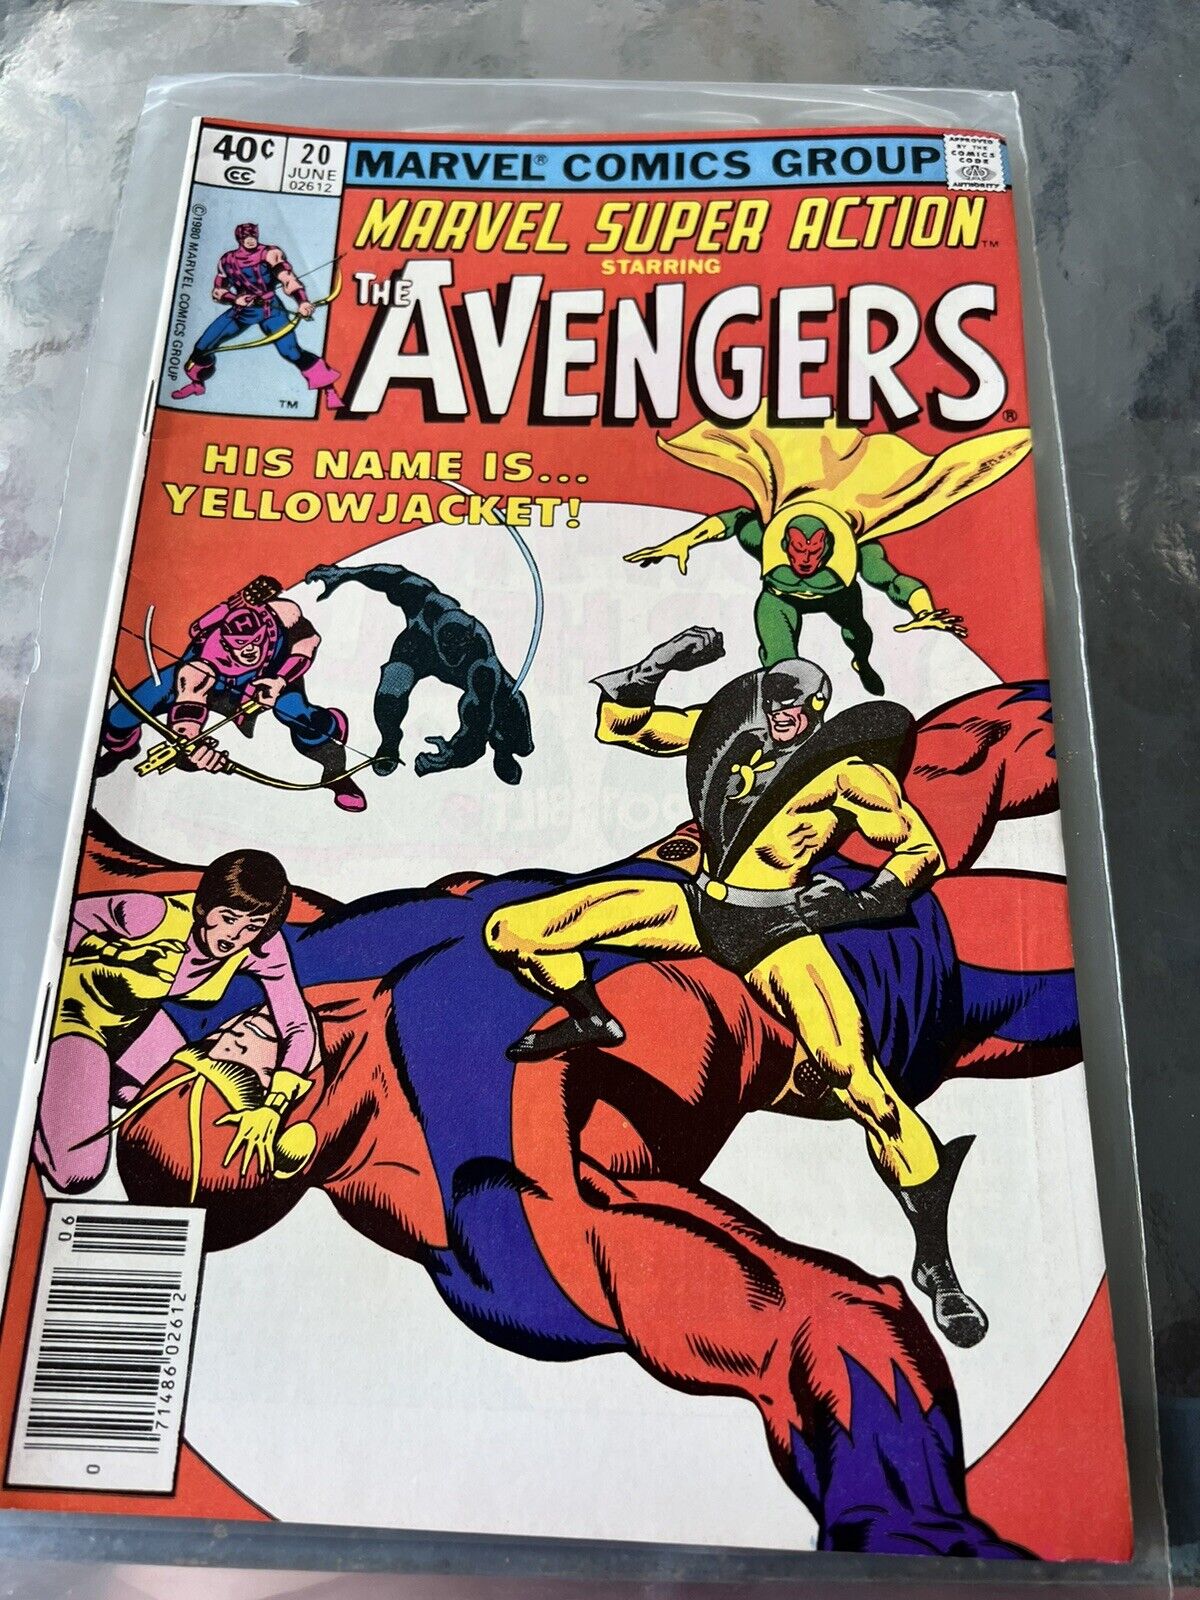 Marvel Super Action #20 June 1980 THE AVENGERS